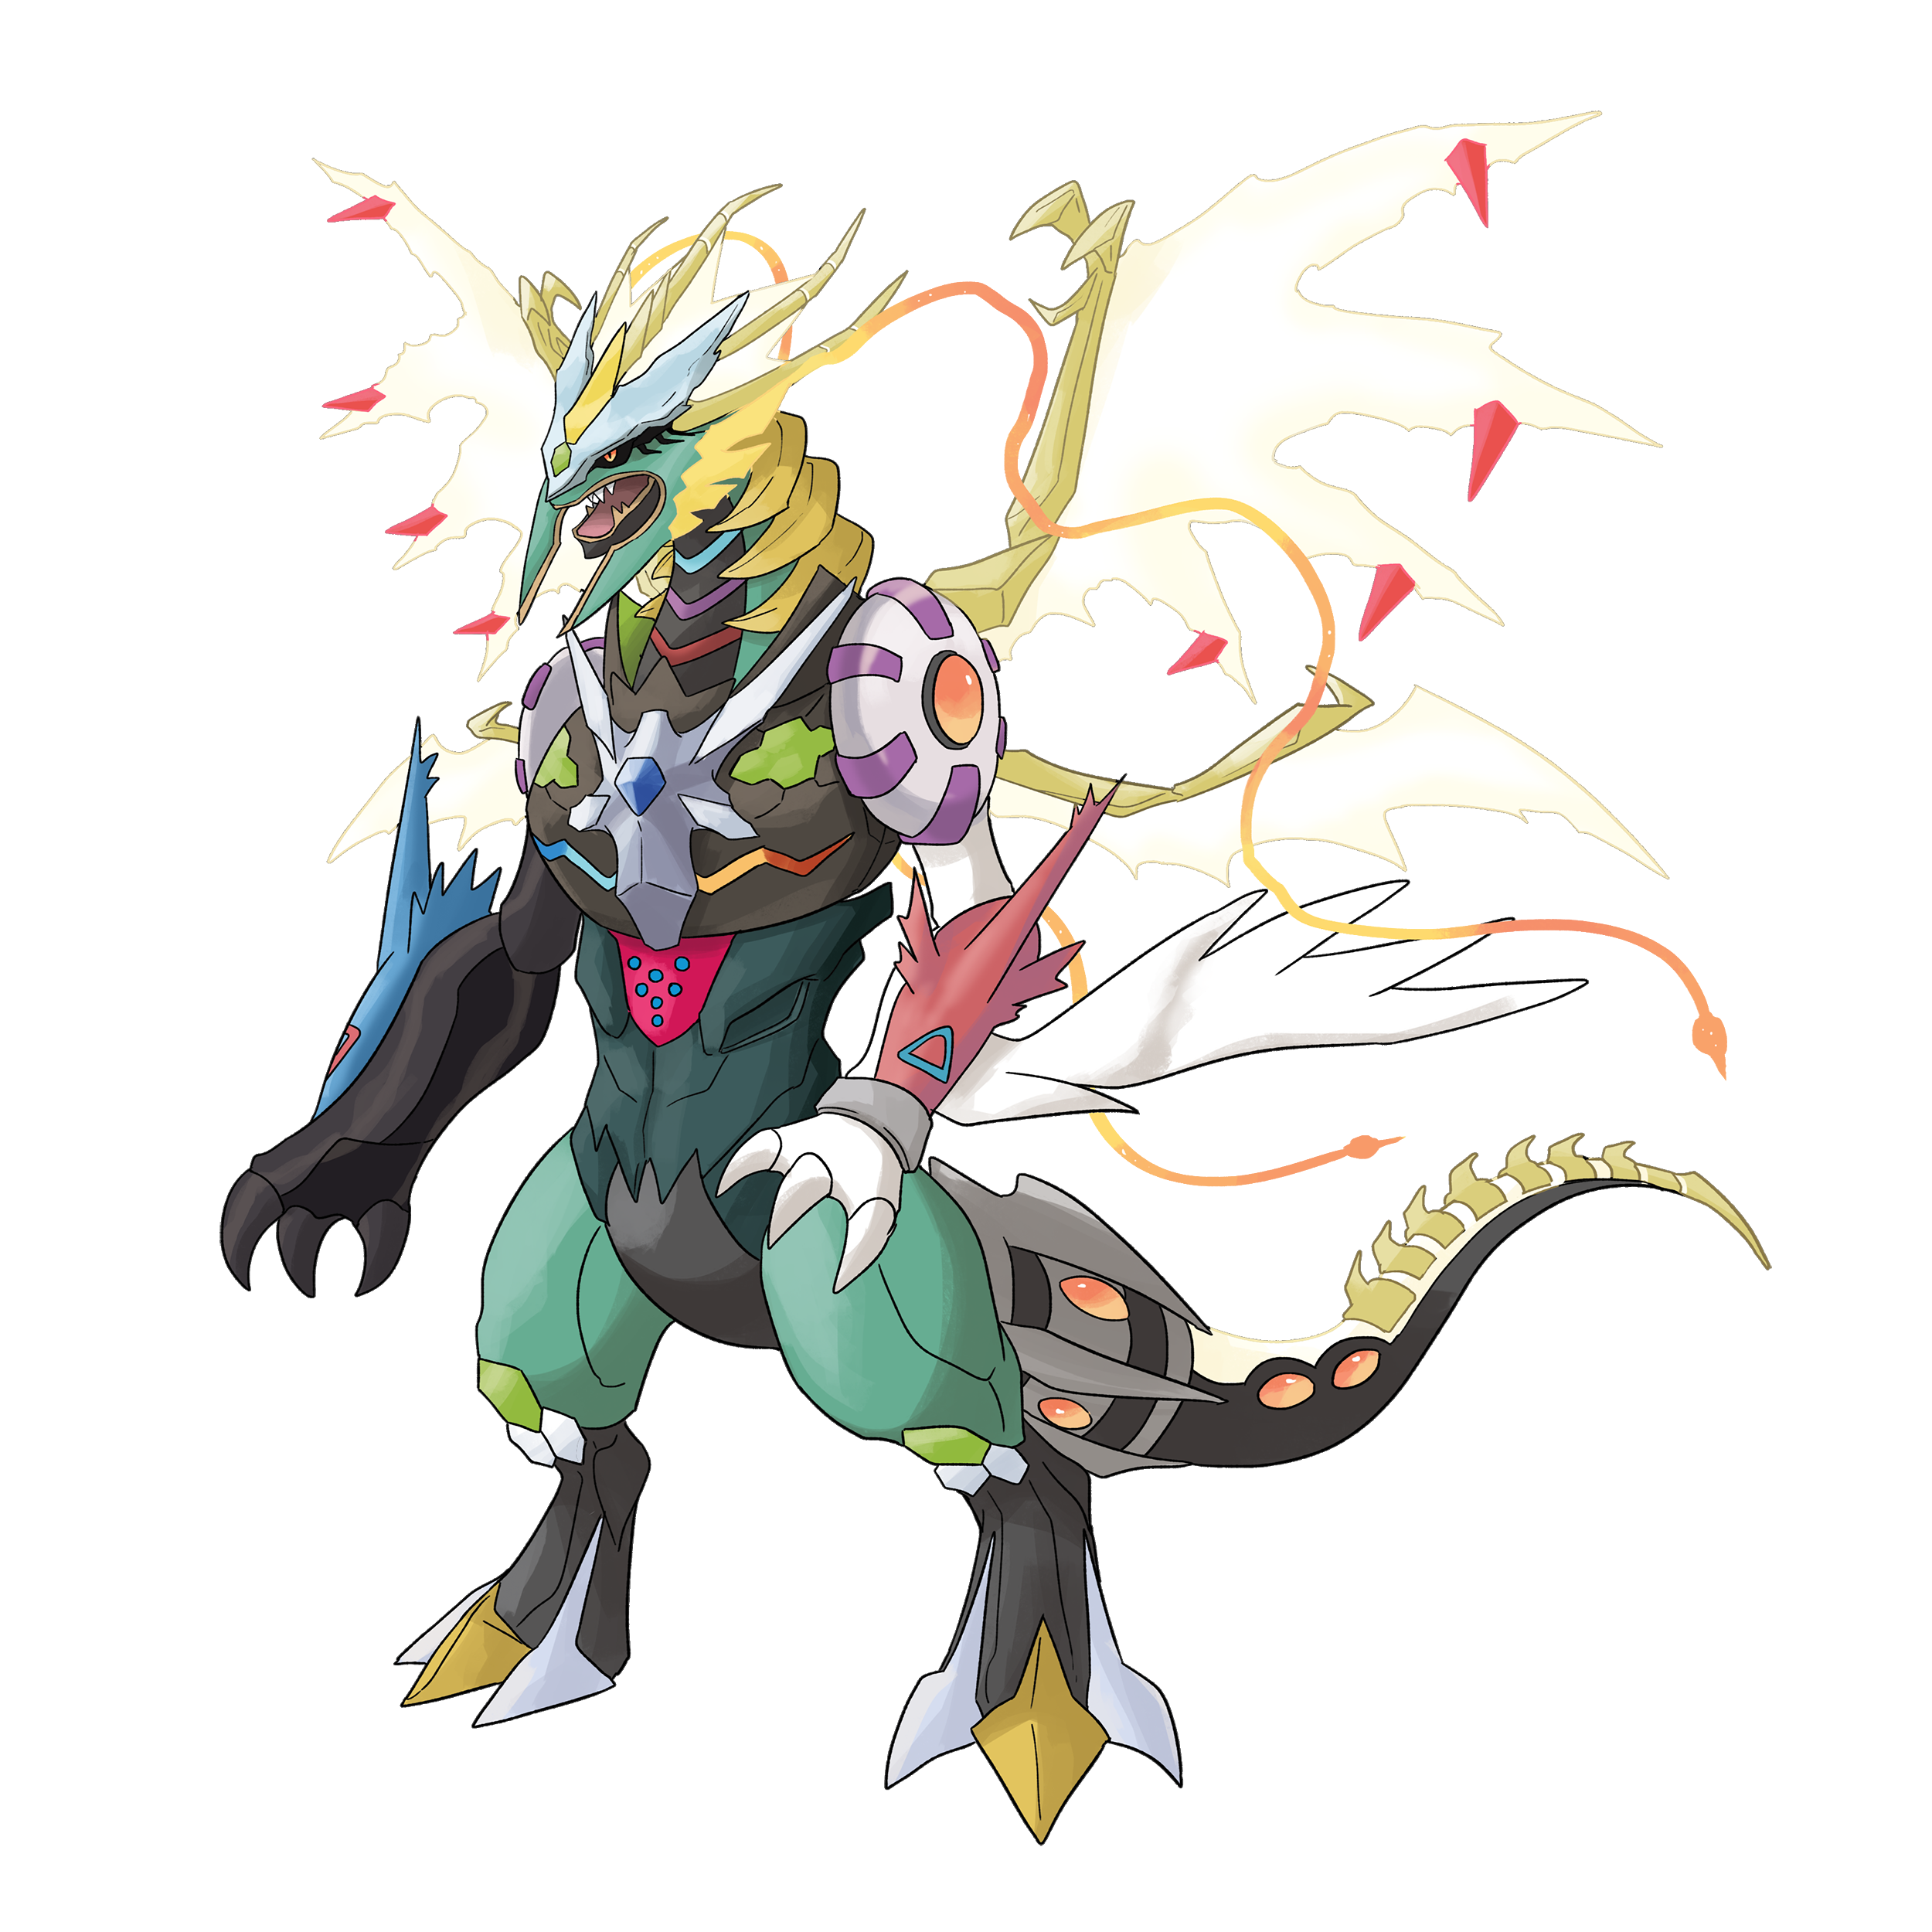 A Fusão Dragão e Fada da ELITE FOUR - Pokémon Infinite Fusion #29 